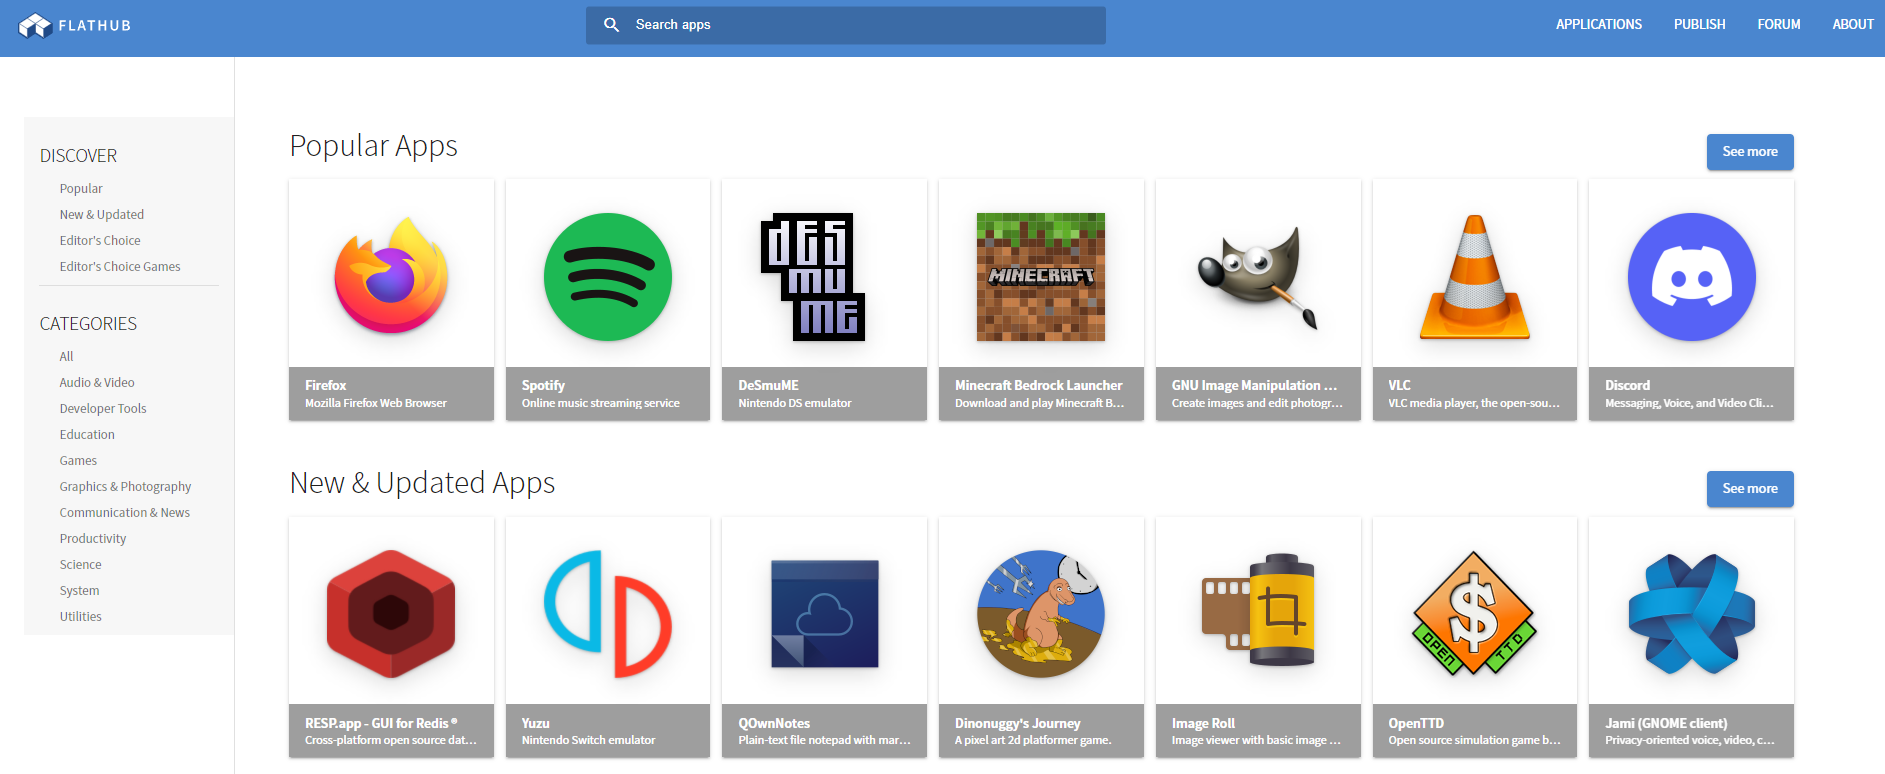 Flathub é renovado e permite pesquisar, descobrir e instalar aplicativos no Flatpak